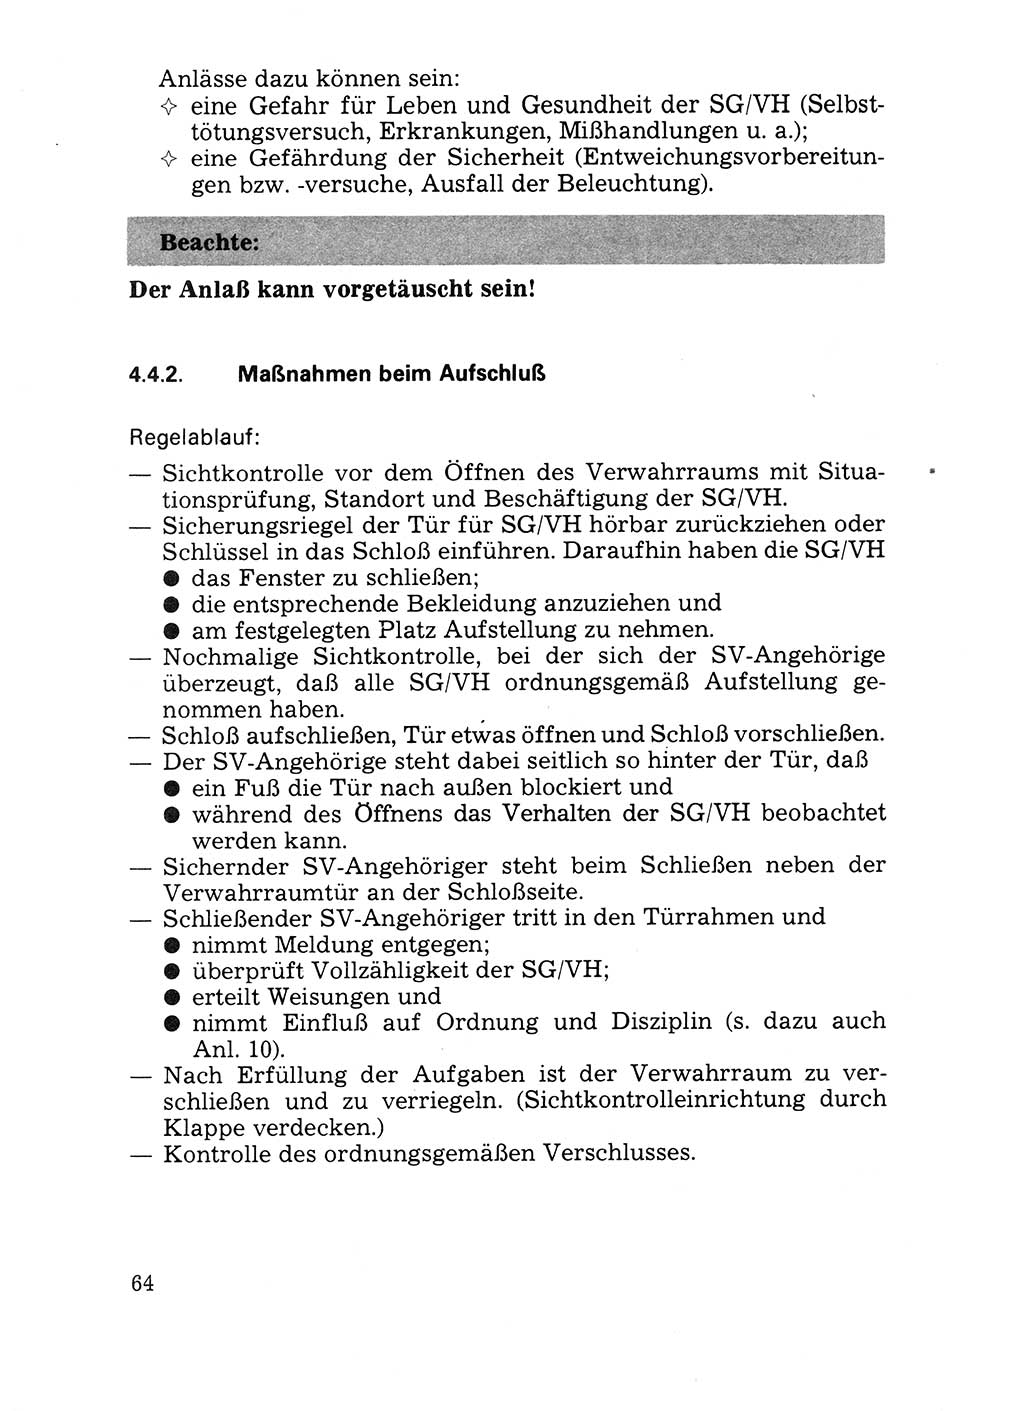 Handbuch für operative Dienste, Abteilung Strafvollzug (SV) [Ministerium des Innern (MdI) Deutsche Demokratische Republik (DDR)] 1981, Seite 64 (Hb. op. D. Abt. SV MdI DDR 1981, S. 64)